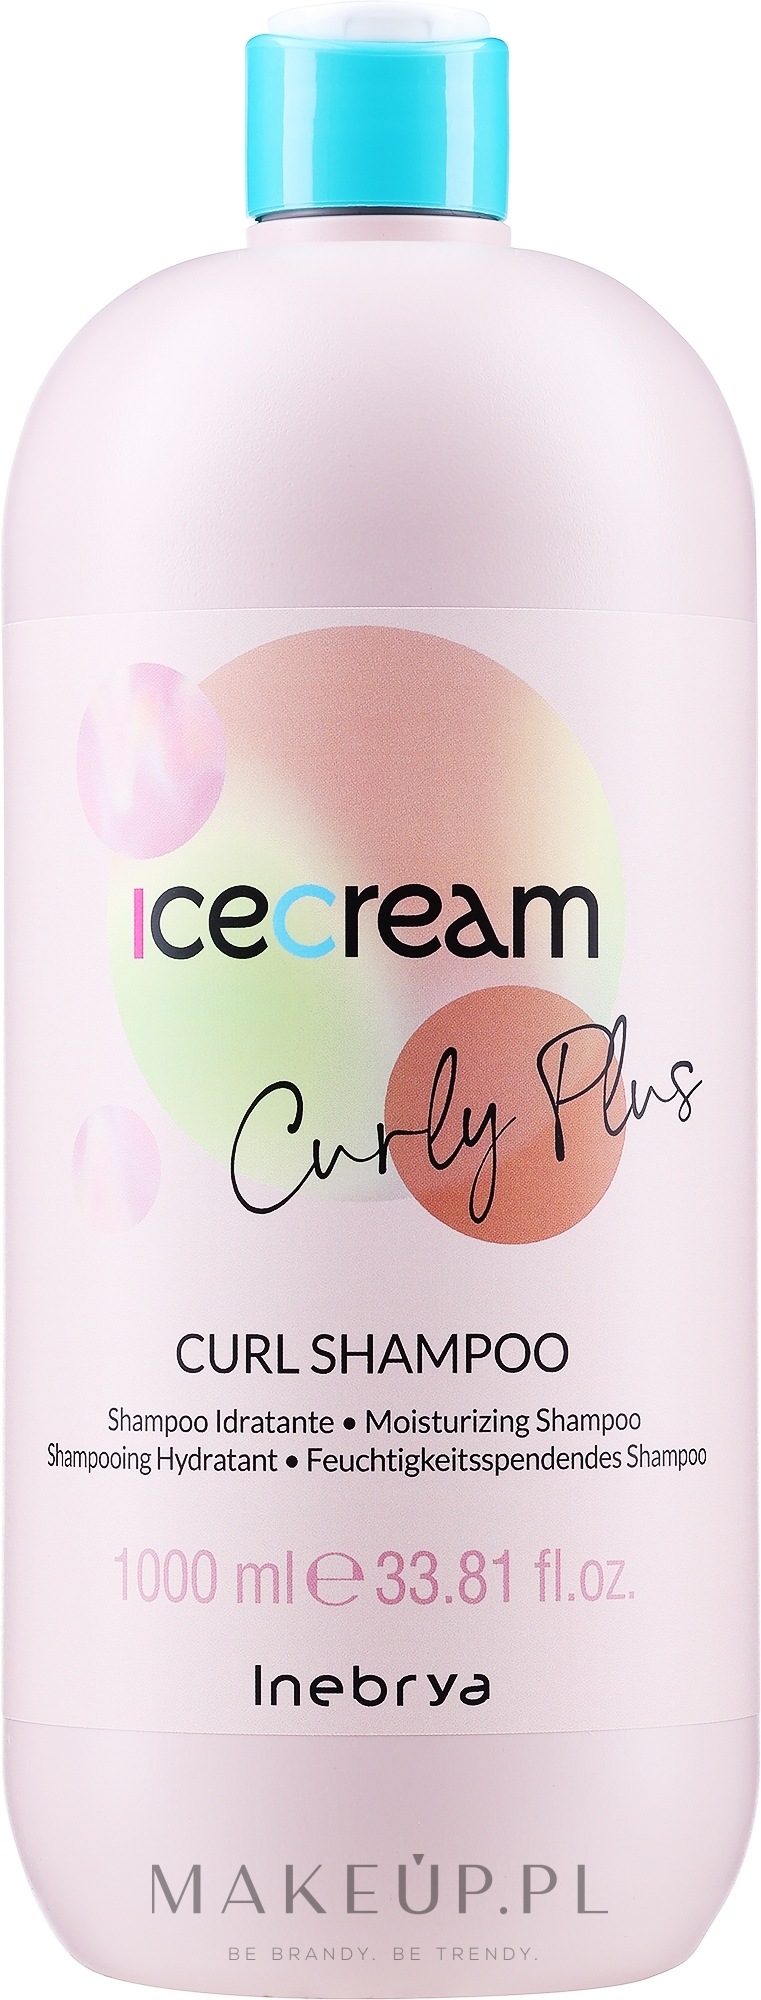 Szampon do włosów kręconych - Inebrya Ice Cream Curly Plus Curl Shampoo — Zdjęcie 1000 ml